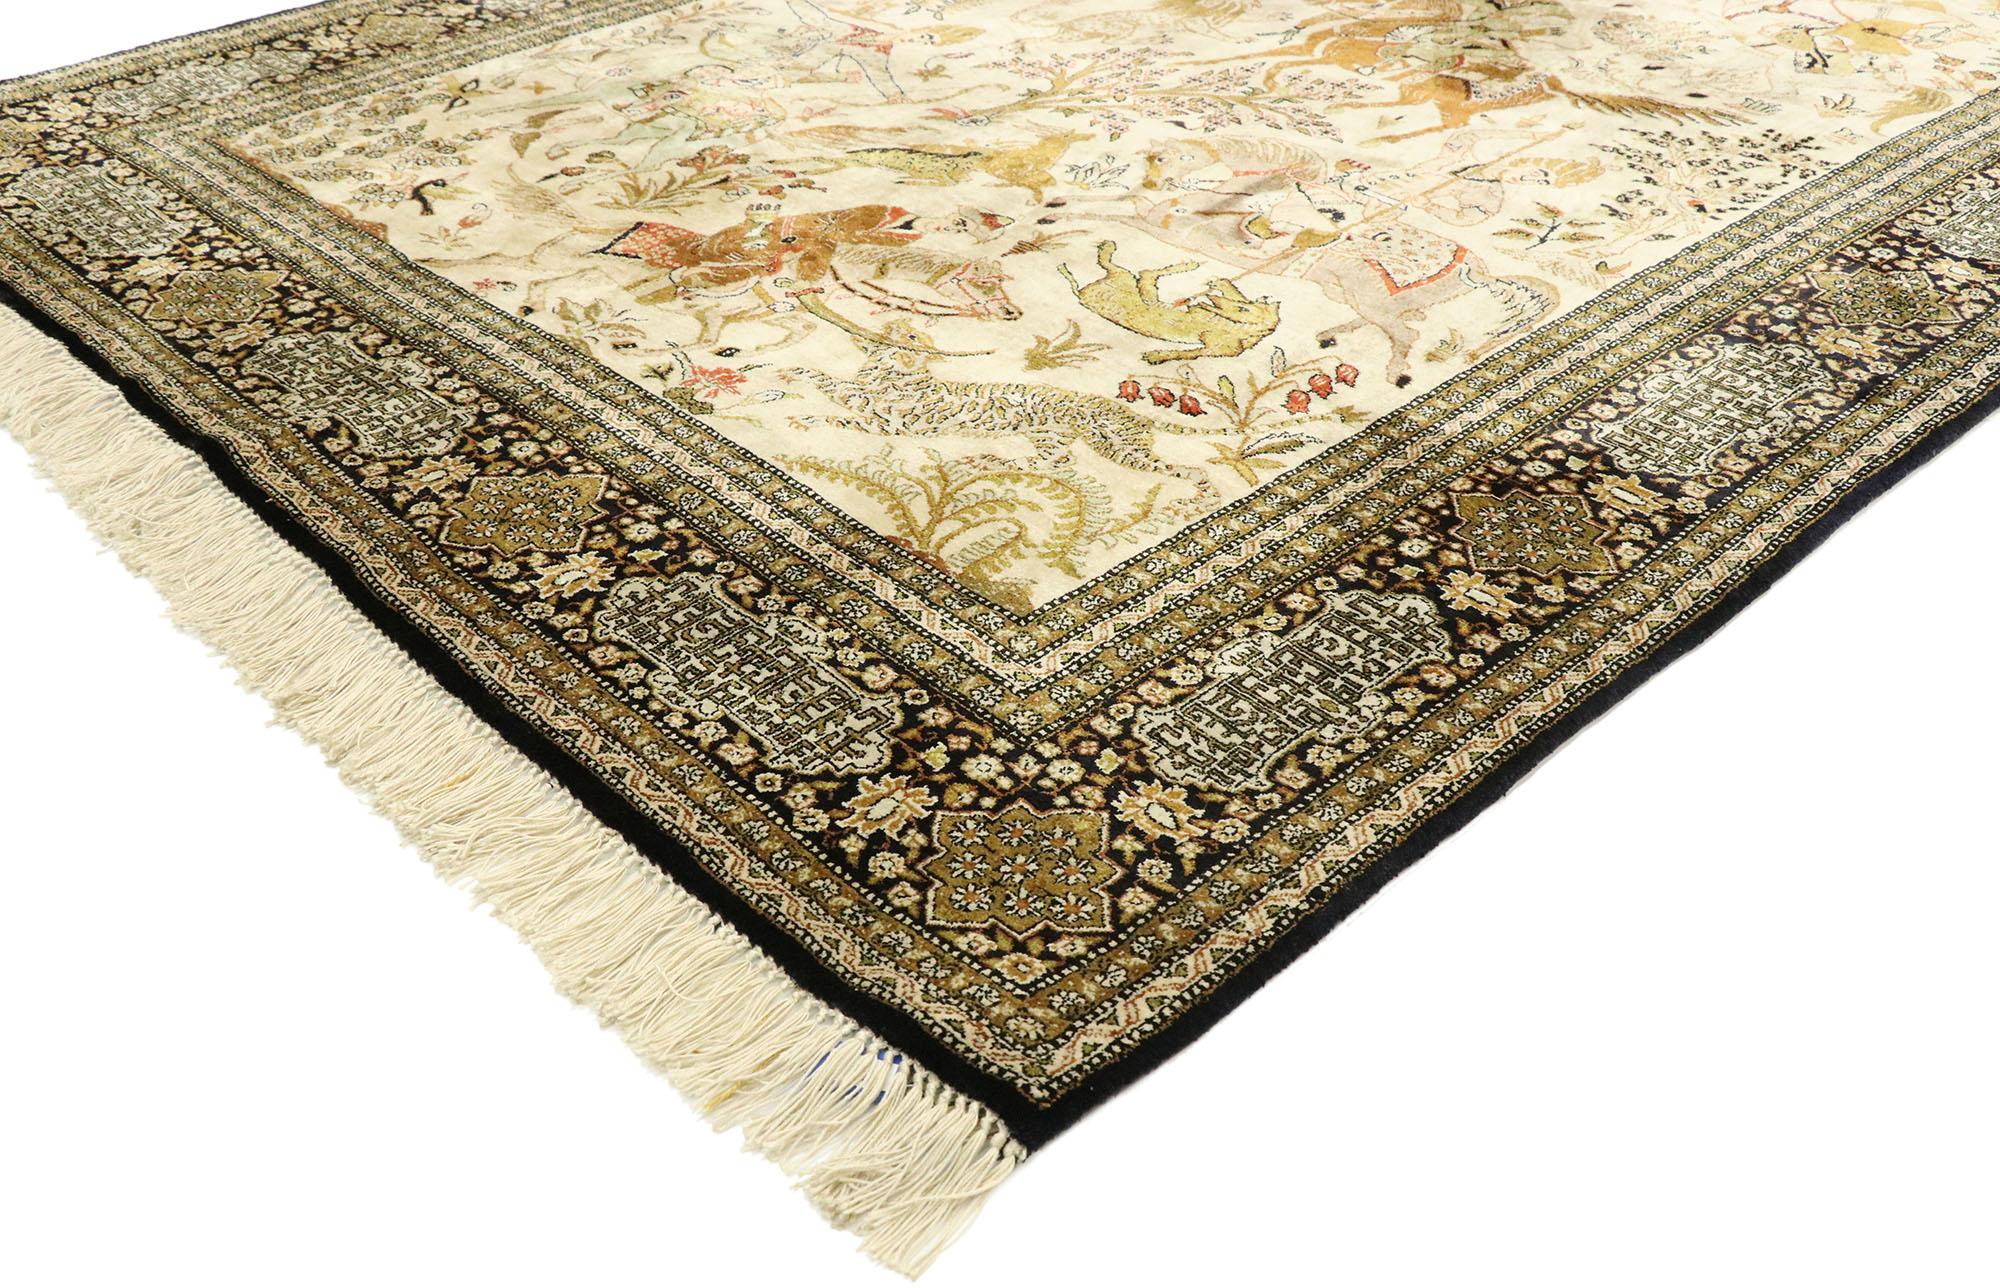 77512, alter persischer Qum-Teppich mit Jagdszene. Dieser handgeknüpfte persische Qum-Teppich aus Wolle im Vintage-Stil zeigt eine lebhafte Jagdszene vor einem beigen Hintergrund. Das Gefühl der Flucht wird deutlich, wenn persische Jäger zu Pferd